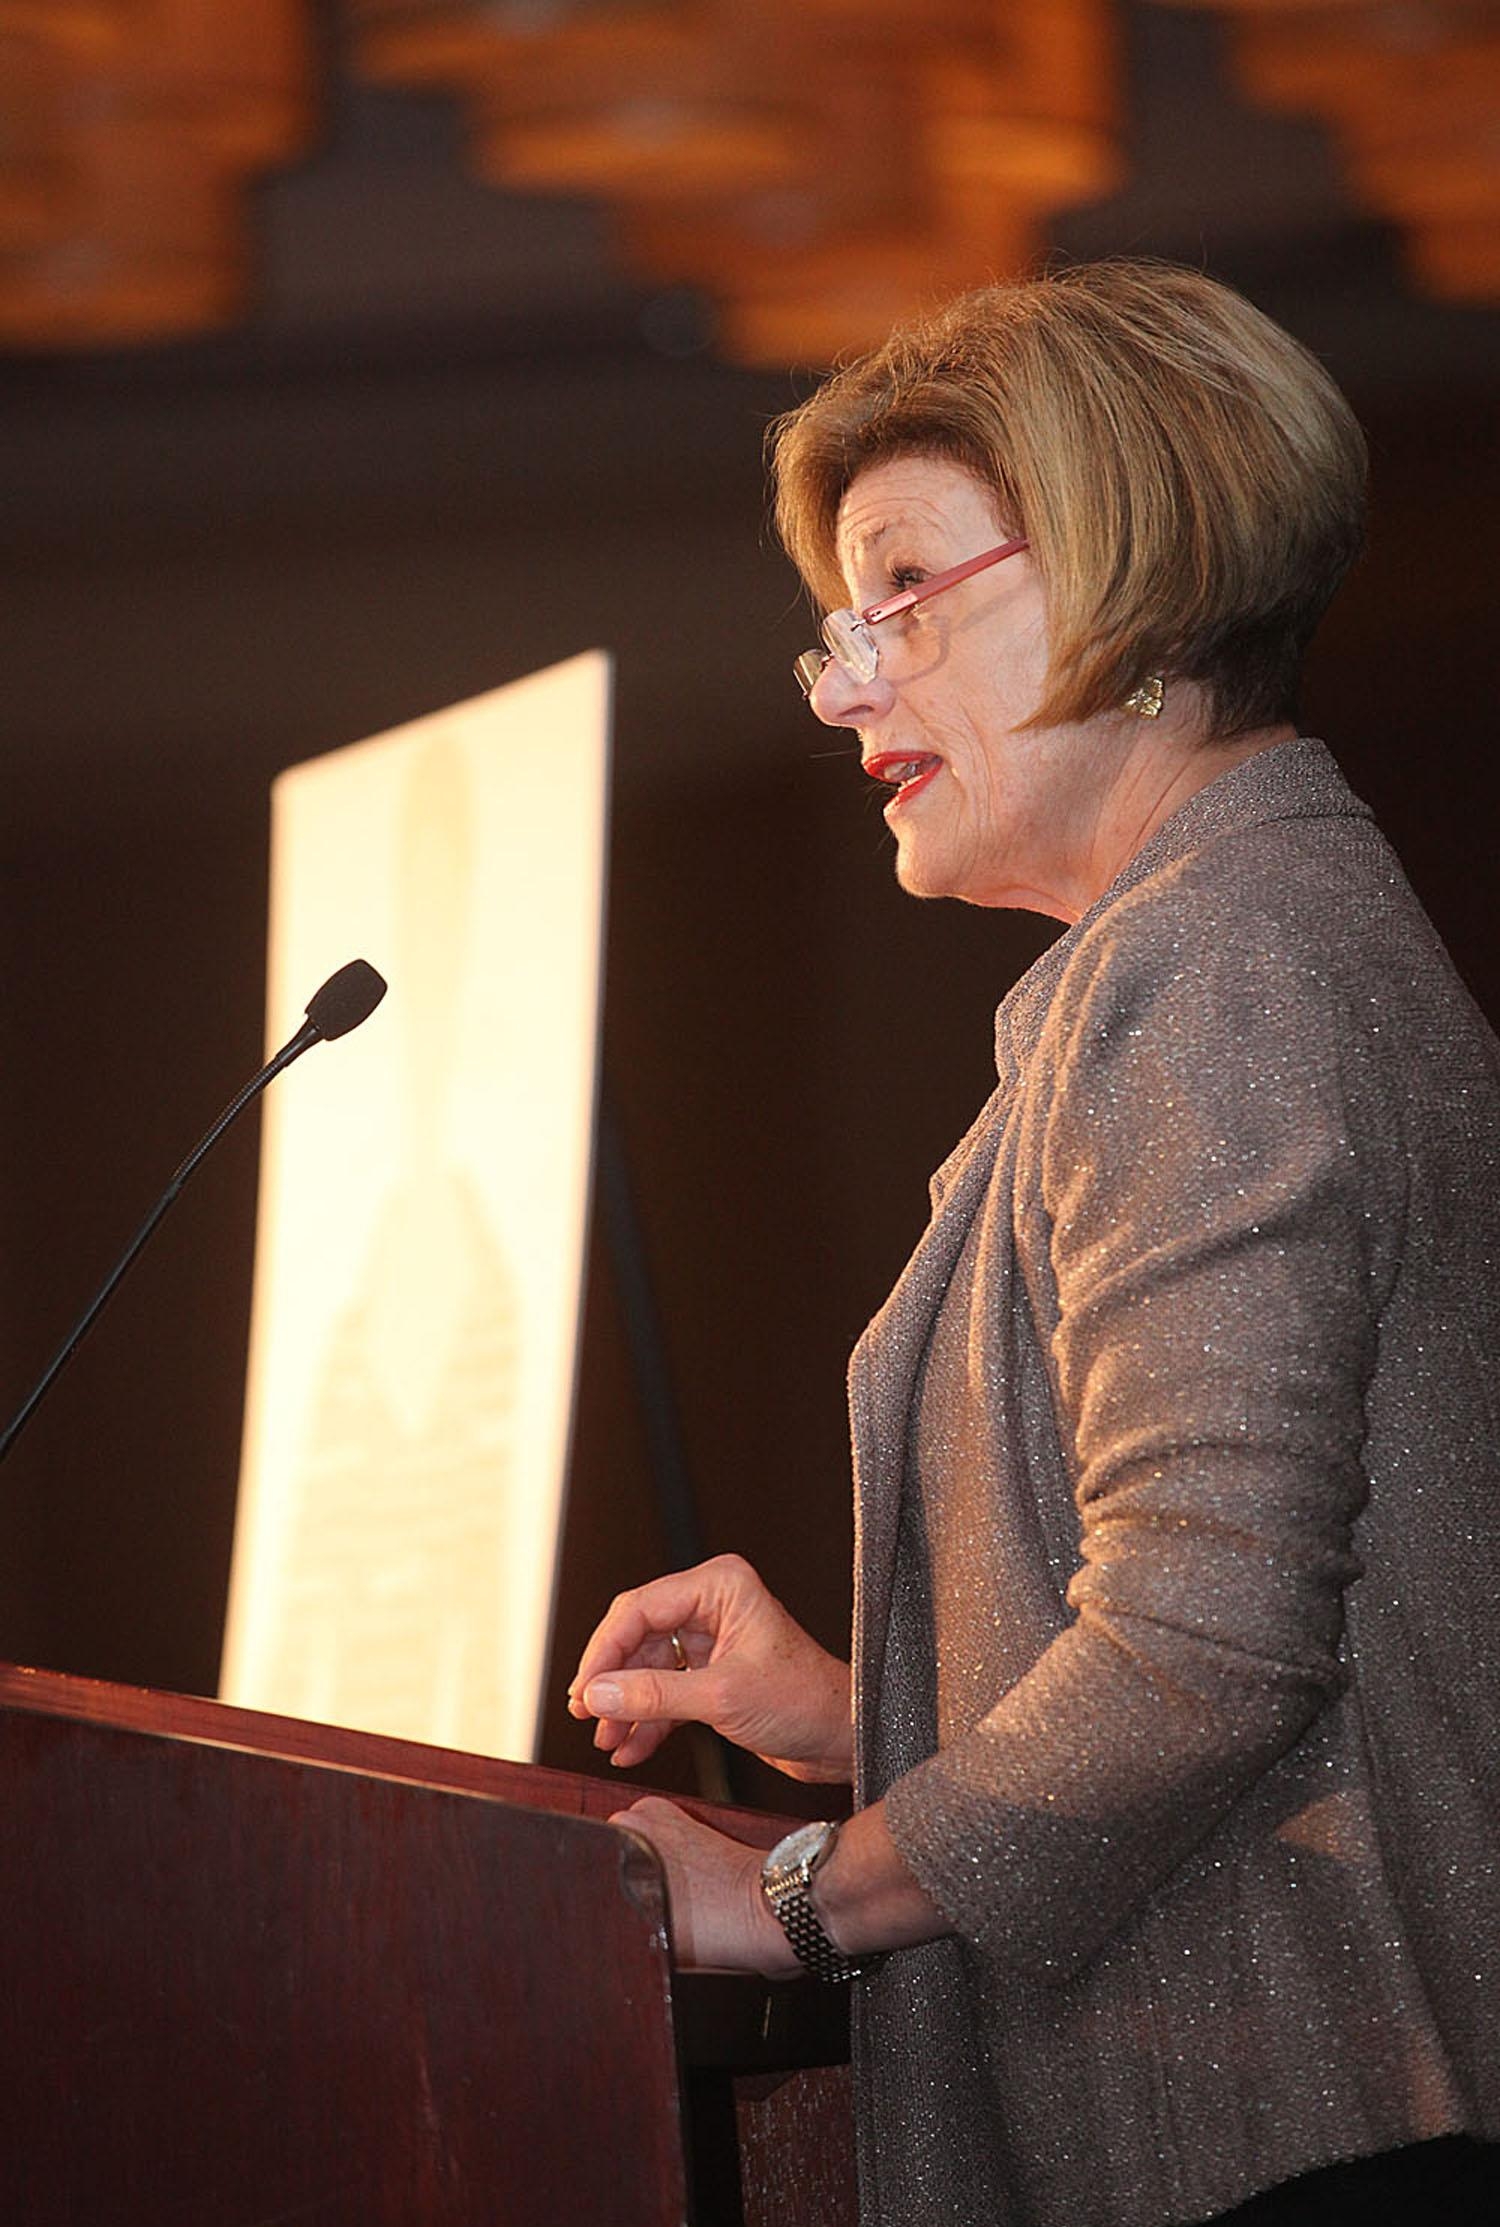 Кети Минехан стала первой женщиной президентом Федерального Резервного бакнка Бостона